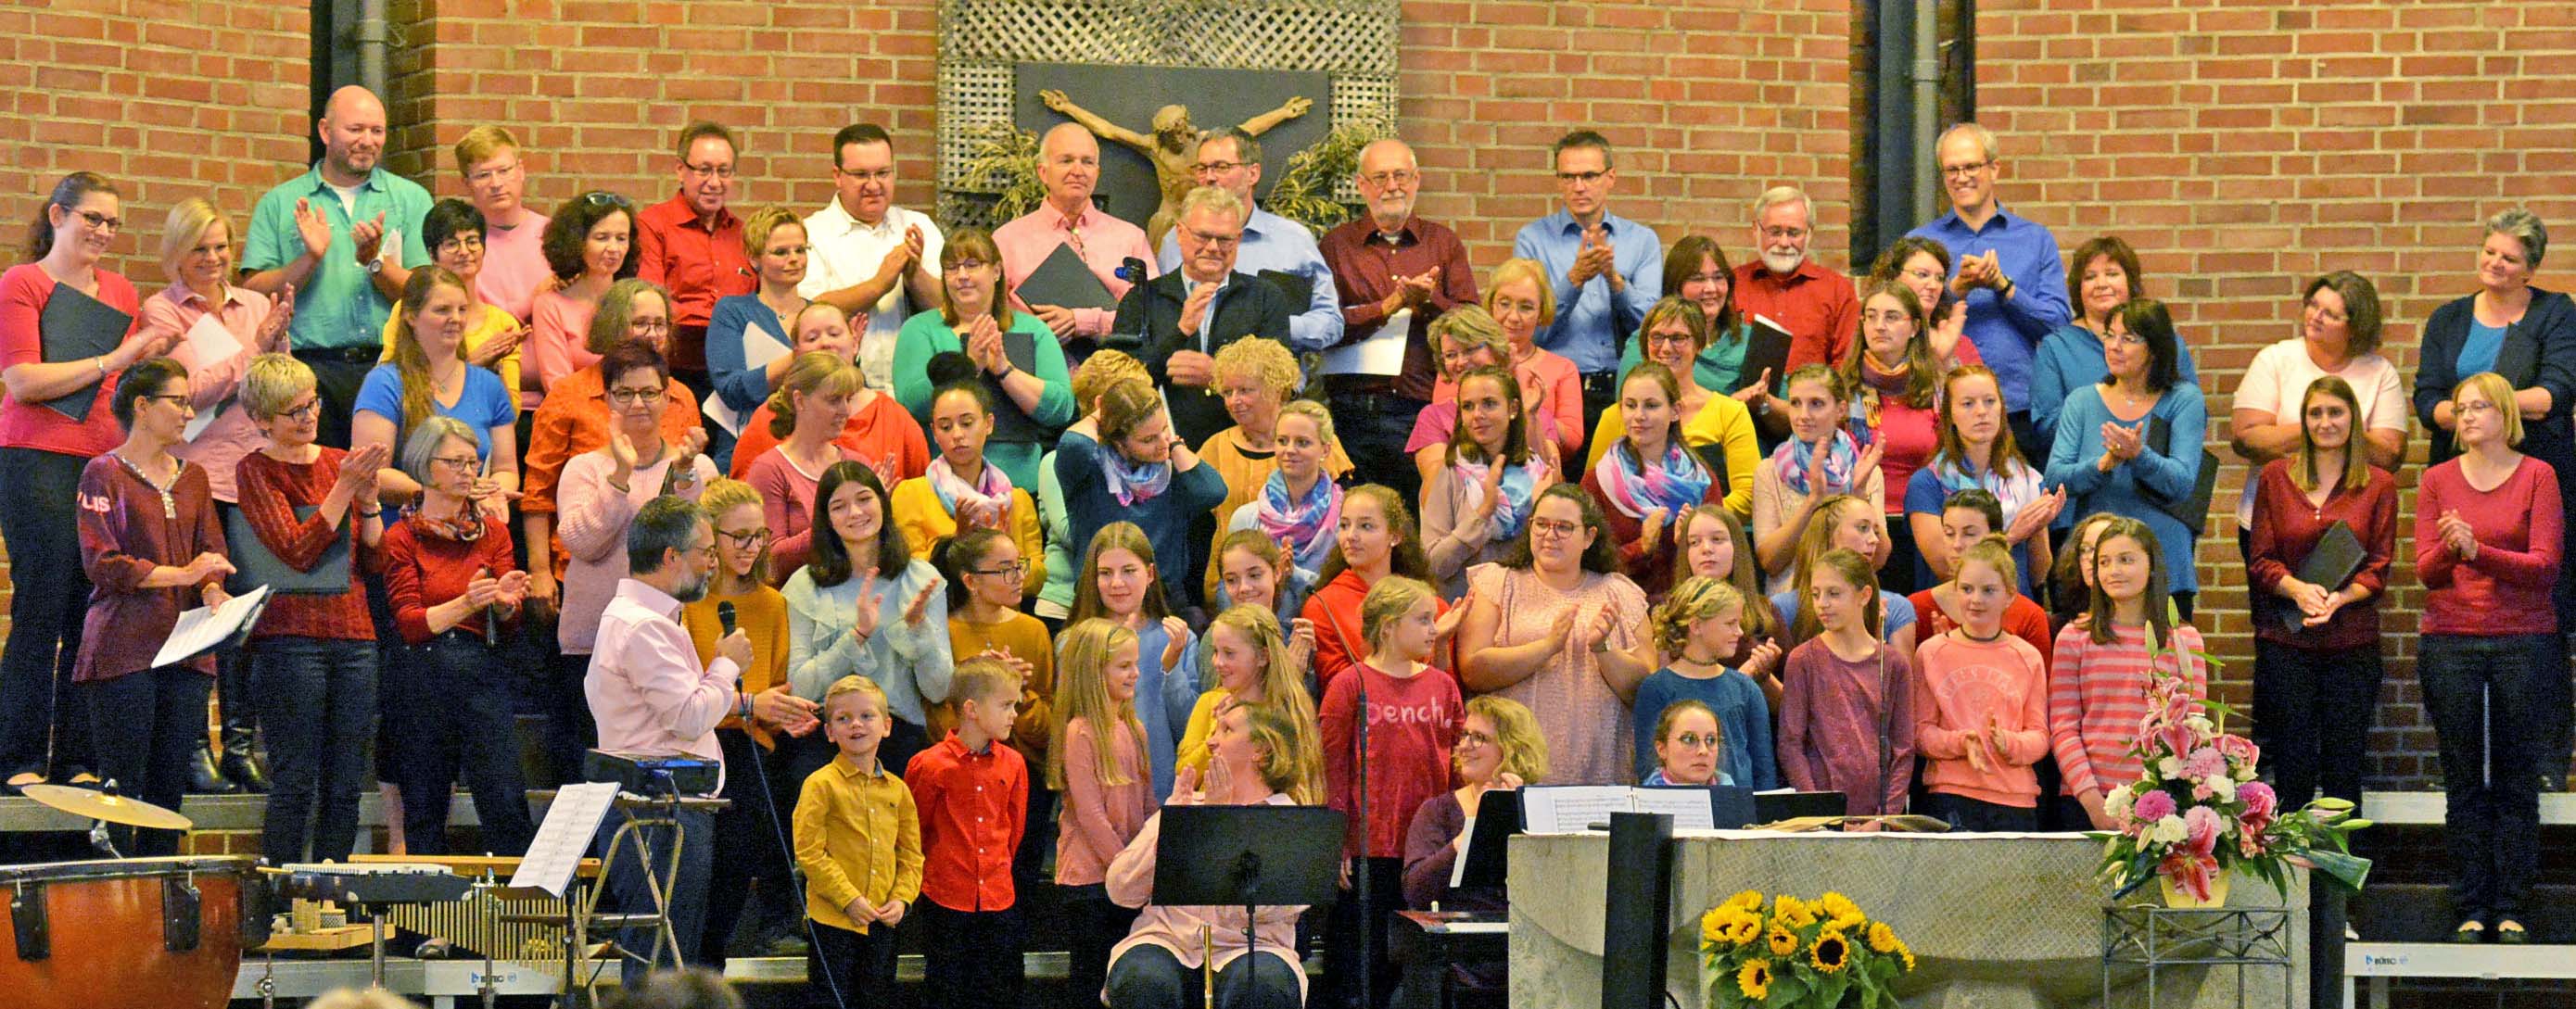 Unsere Chöre Cantamus, weBelieve, Jugendchor, Shalomchor und Ehemalige beim Jubiläumskonzert 2018